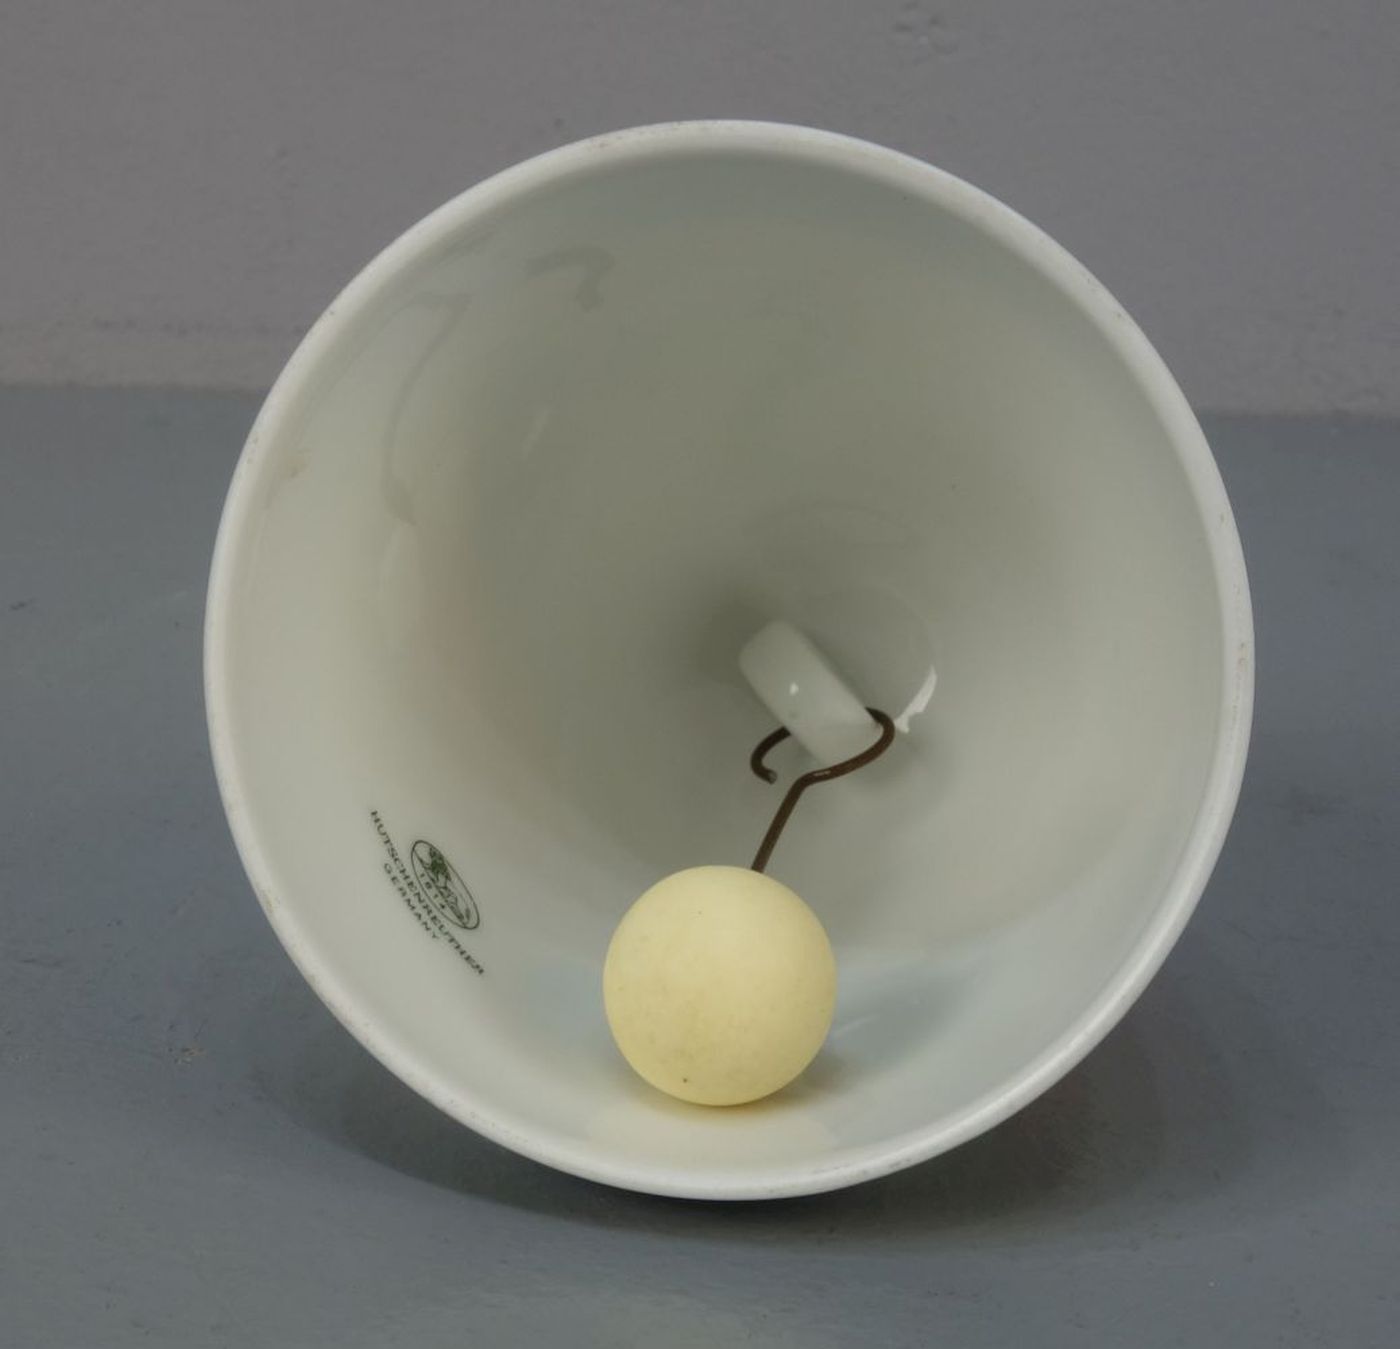 GLOCKE / TISCHGLOCKE / table bell, Porzellan, Manufaktur Hutschenreuther, auf der inneren Wandung - Image 3 of 5